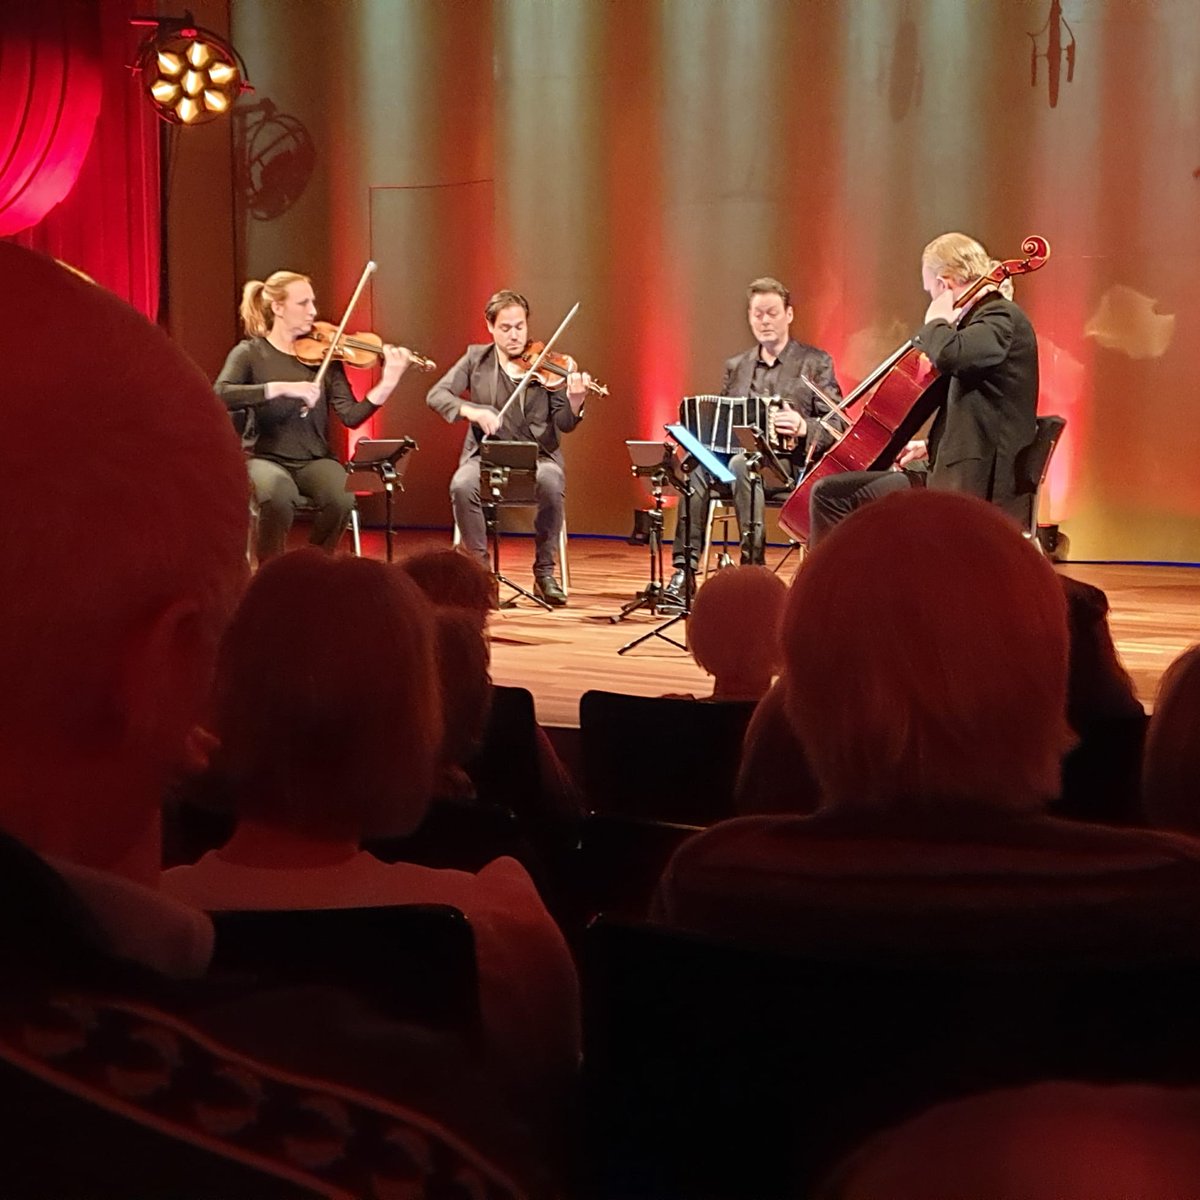 Vanmiddag gaf het @MatangiQuartet met #carelkraayenhof een weergaloos concert in @theater_haarlem .
Zeer enthousiast publiek 😁
Op de foto kan je nét altist #karstenkleijer niet zien vanwege de cello van Arno...